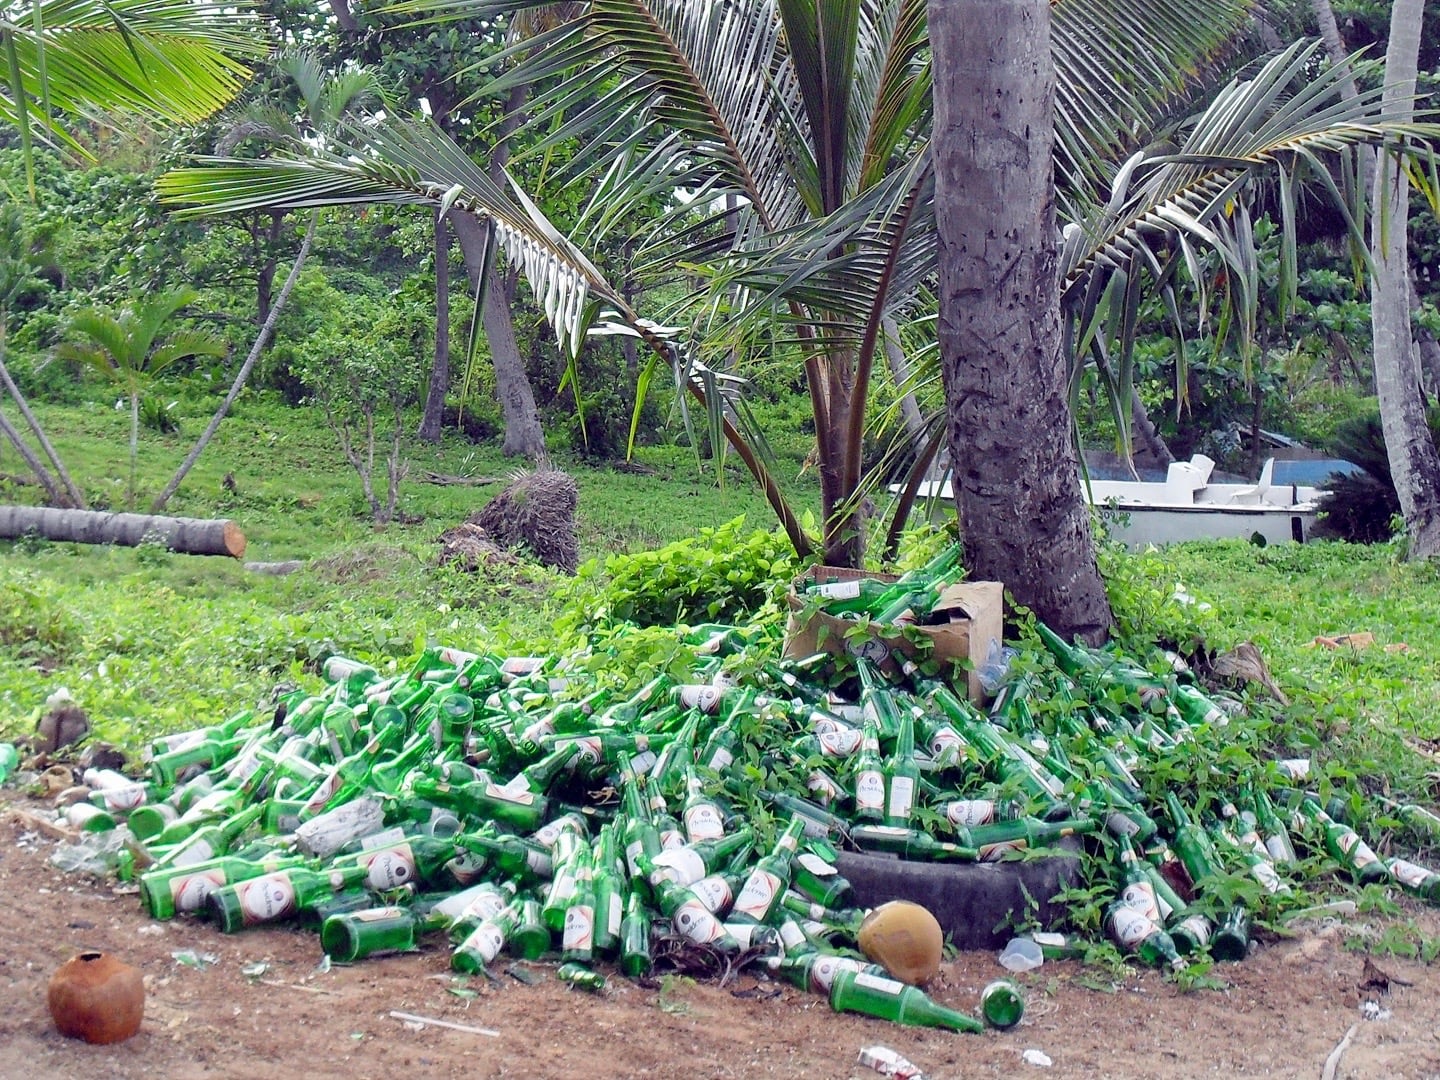 pile of empty beer bottles